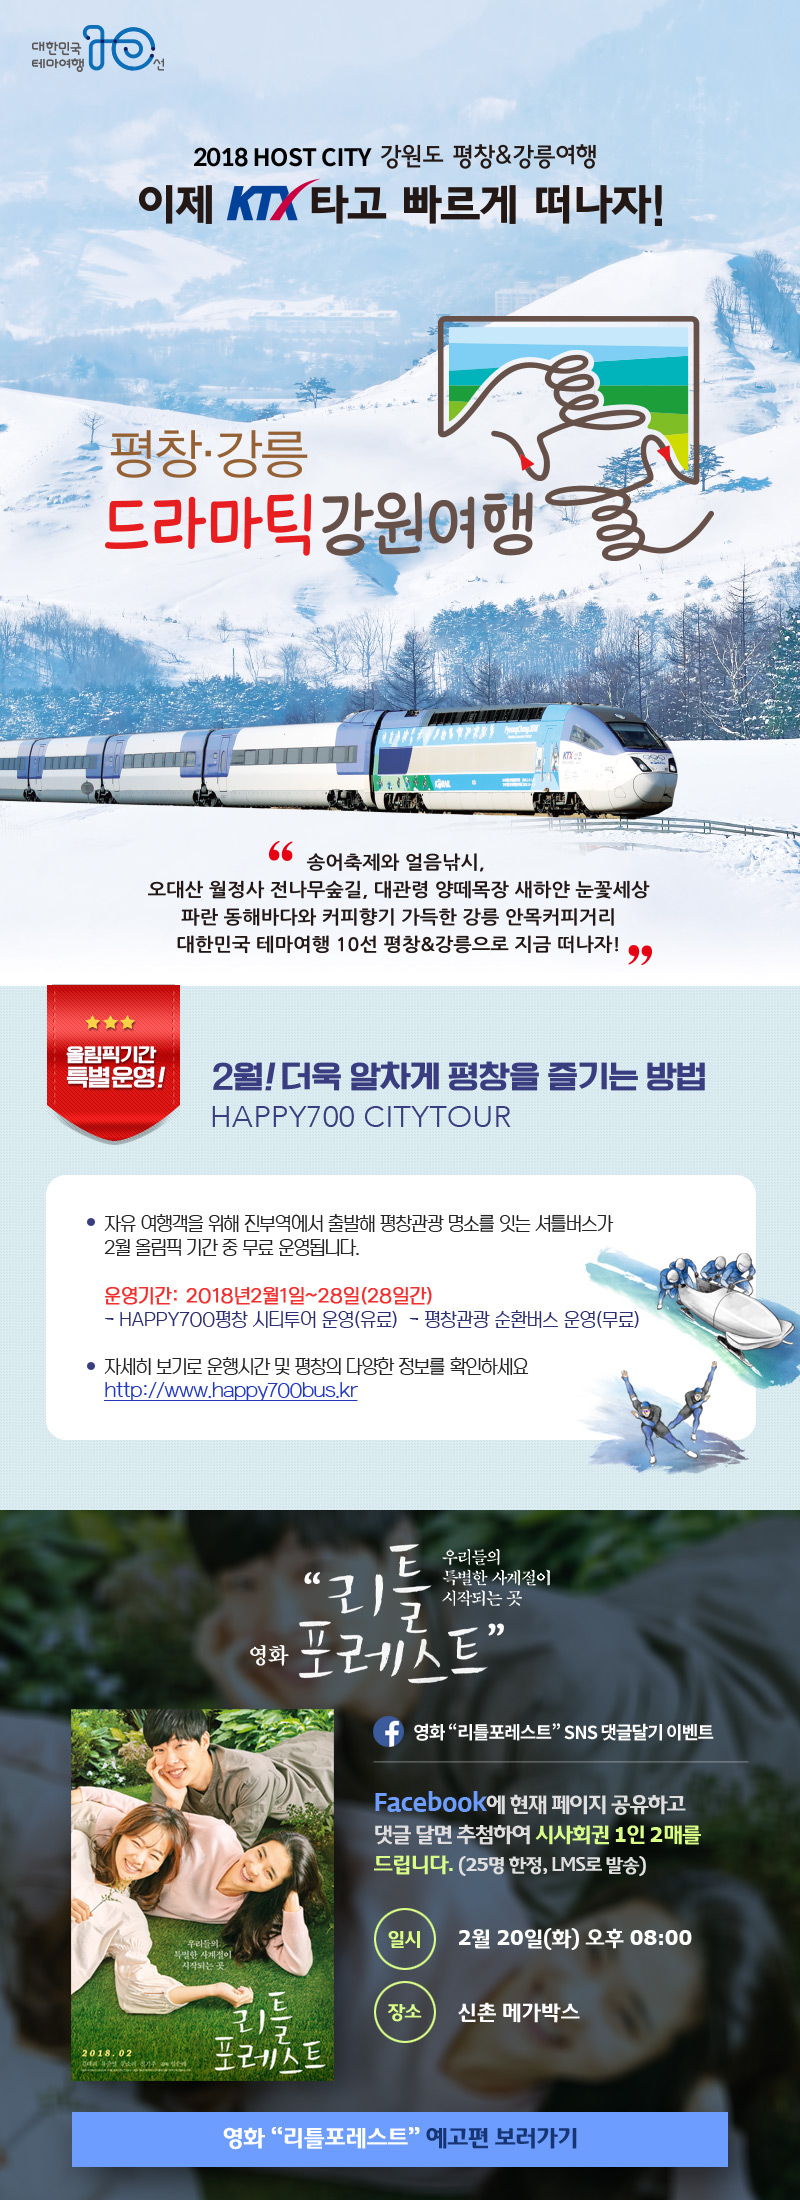 2018 동계올림픽이 열리는 강원도 평창&강릉여행 이제 ktx타고 빠르게 떠나자!